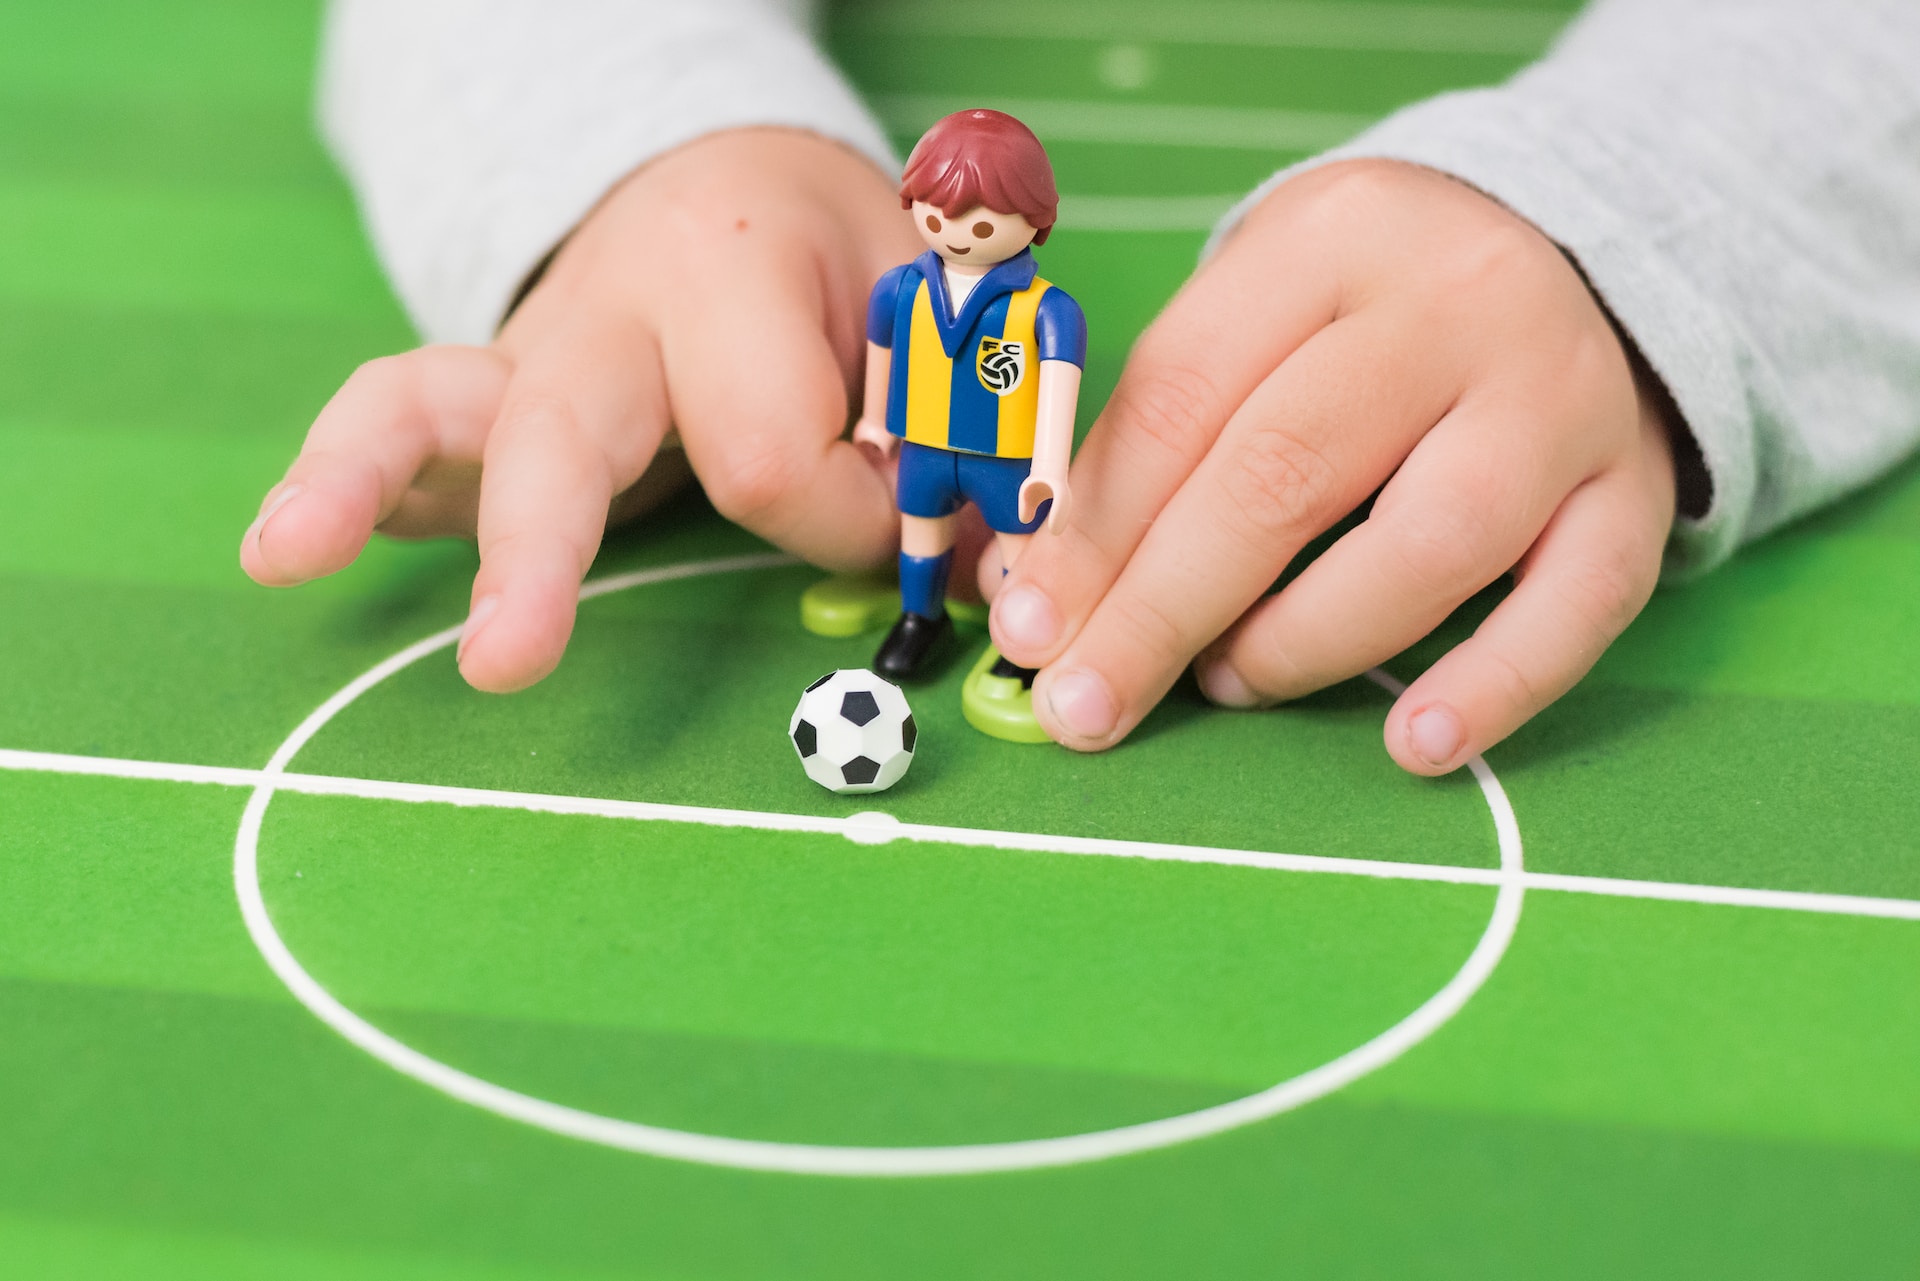 A formação de atletas no futebol e futsal: influência dos